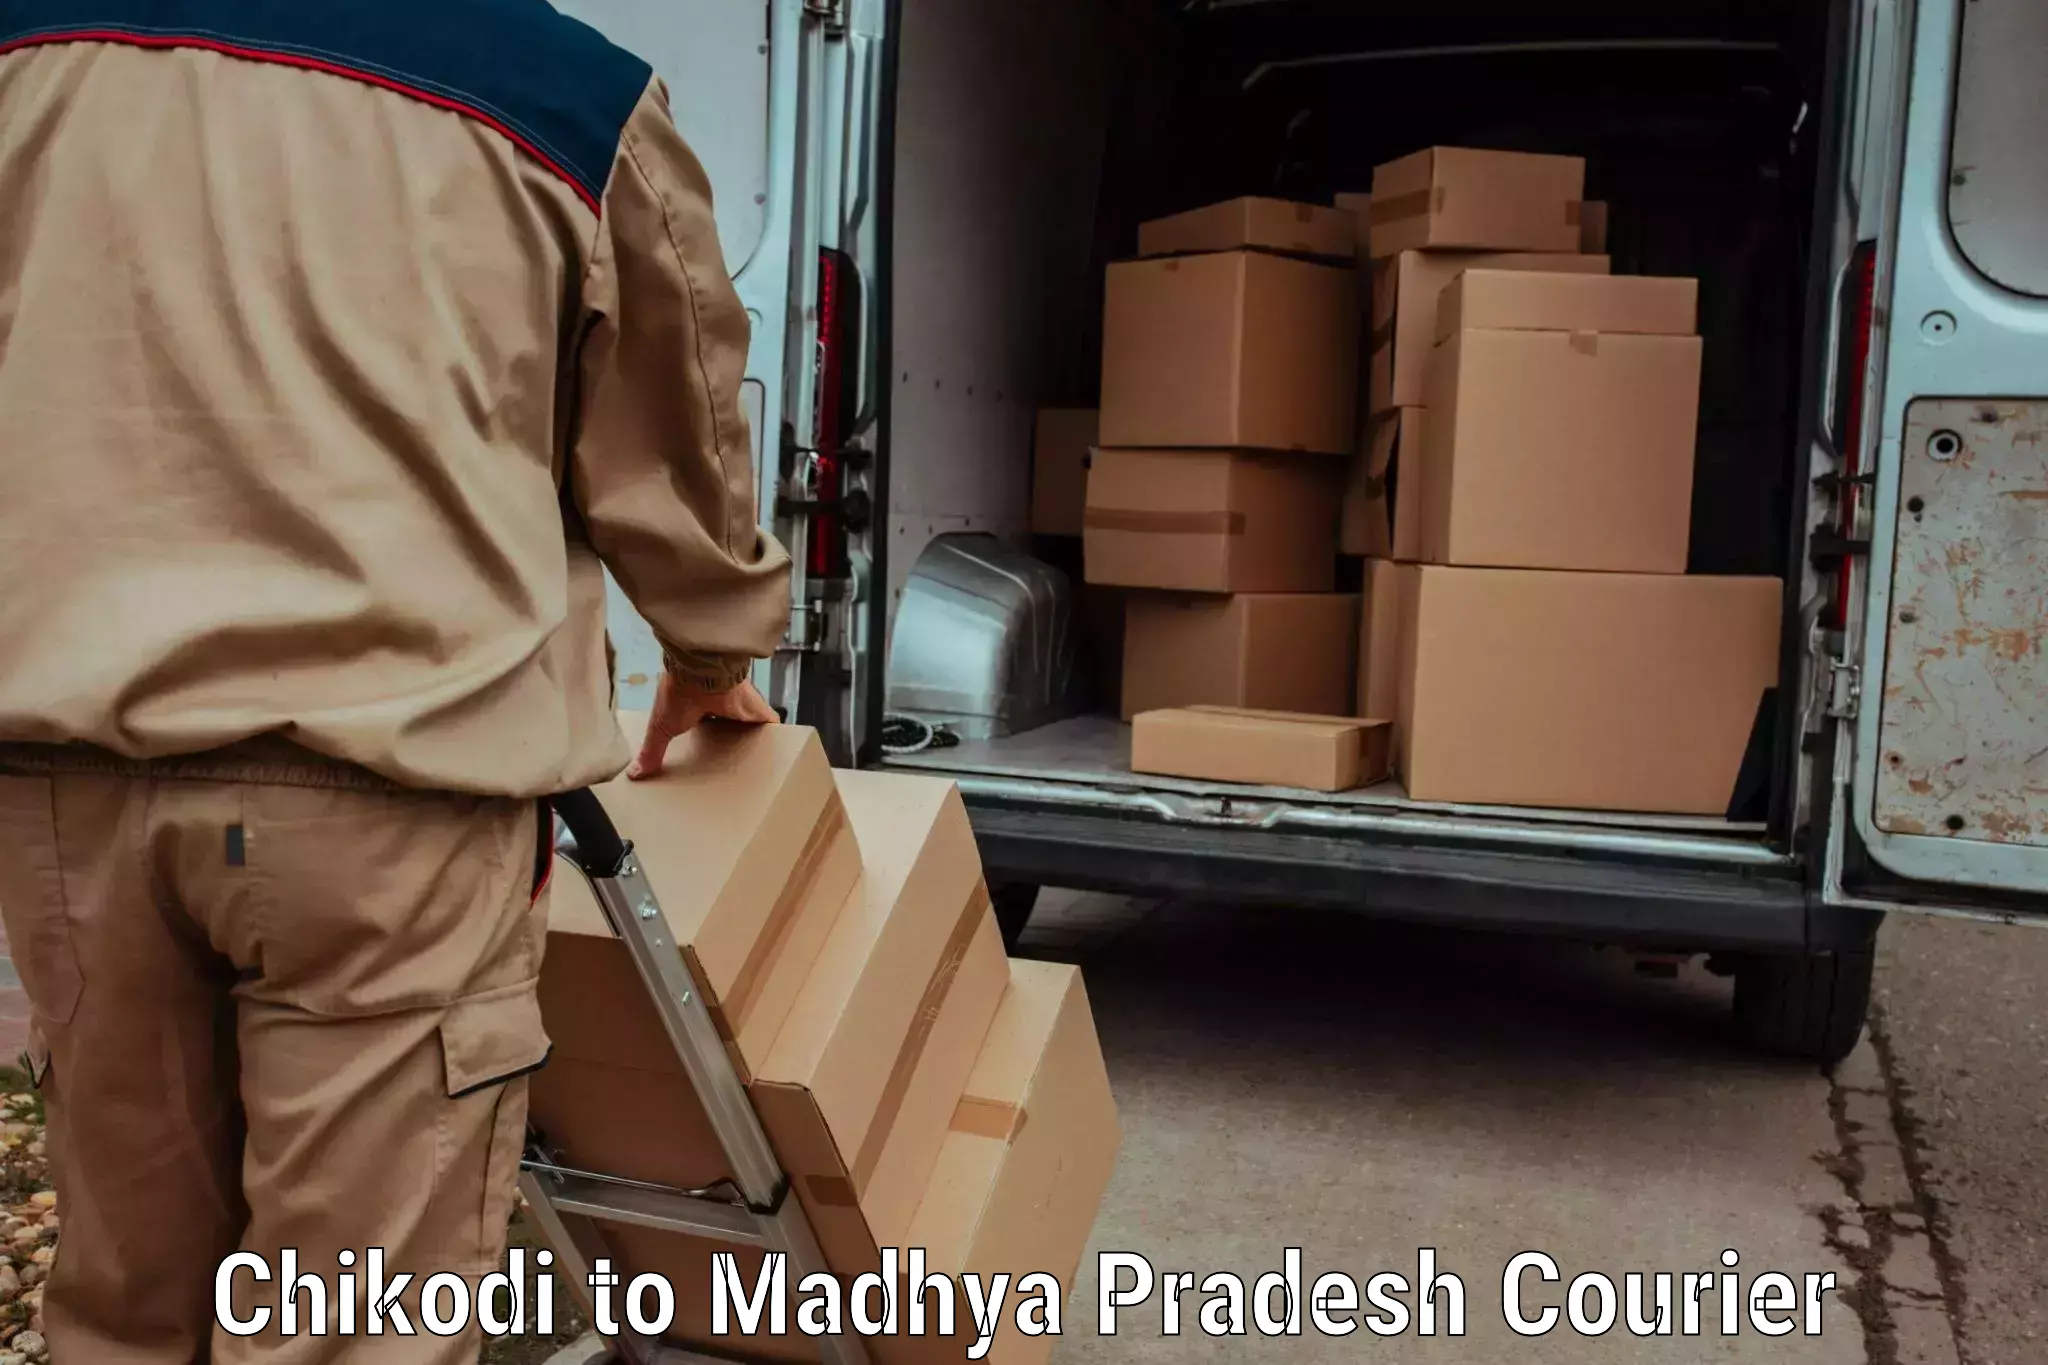 Ground shipping in Chikodi to Maheshwar